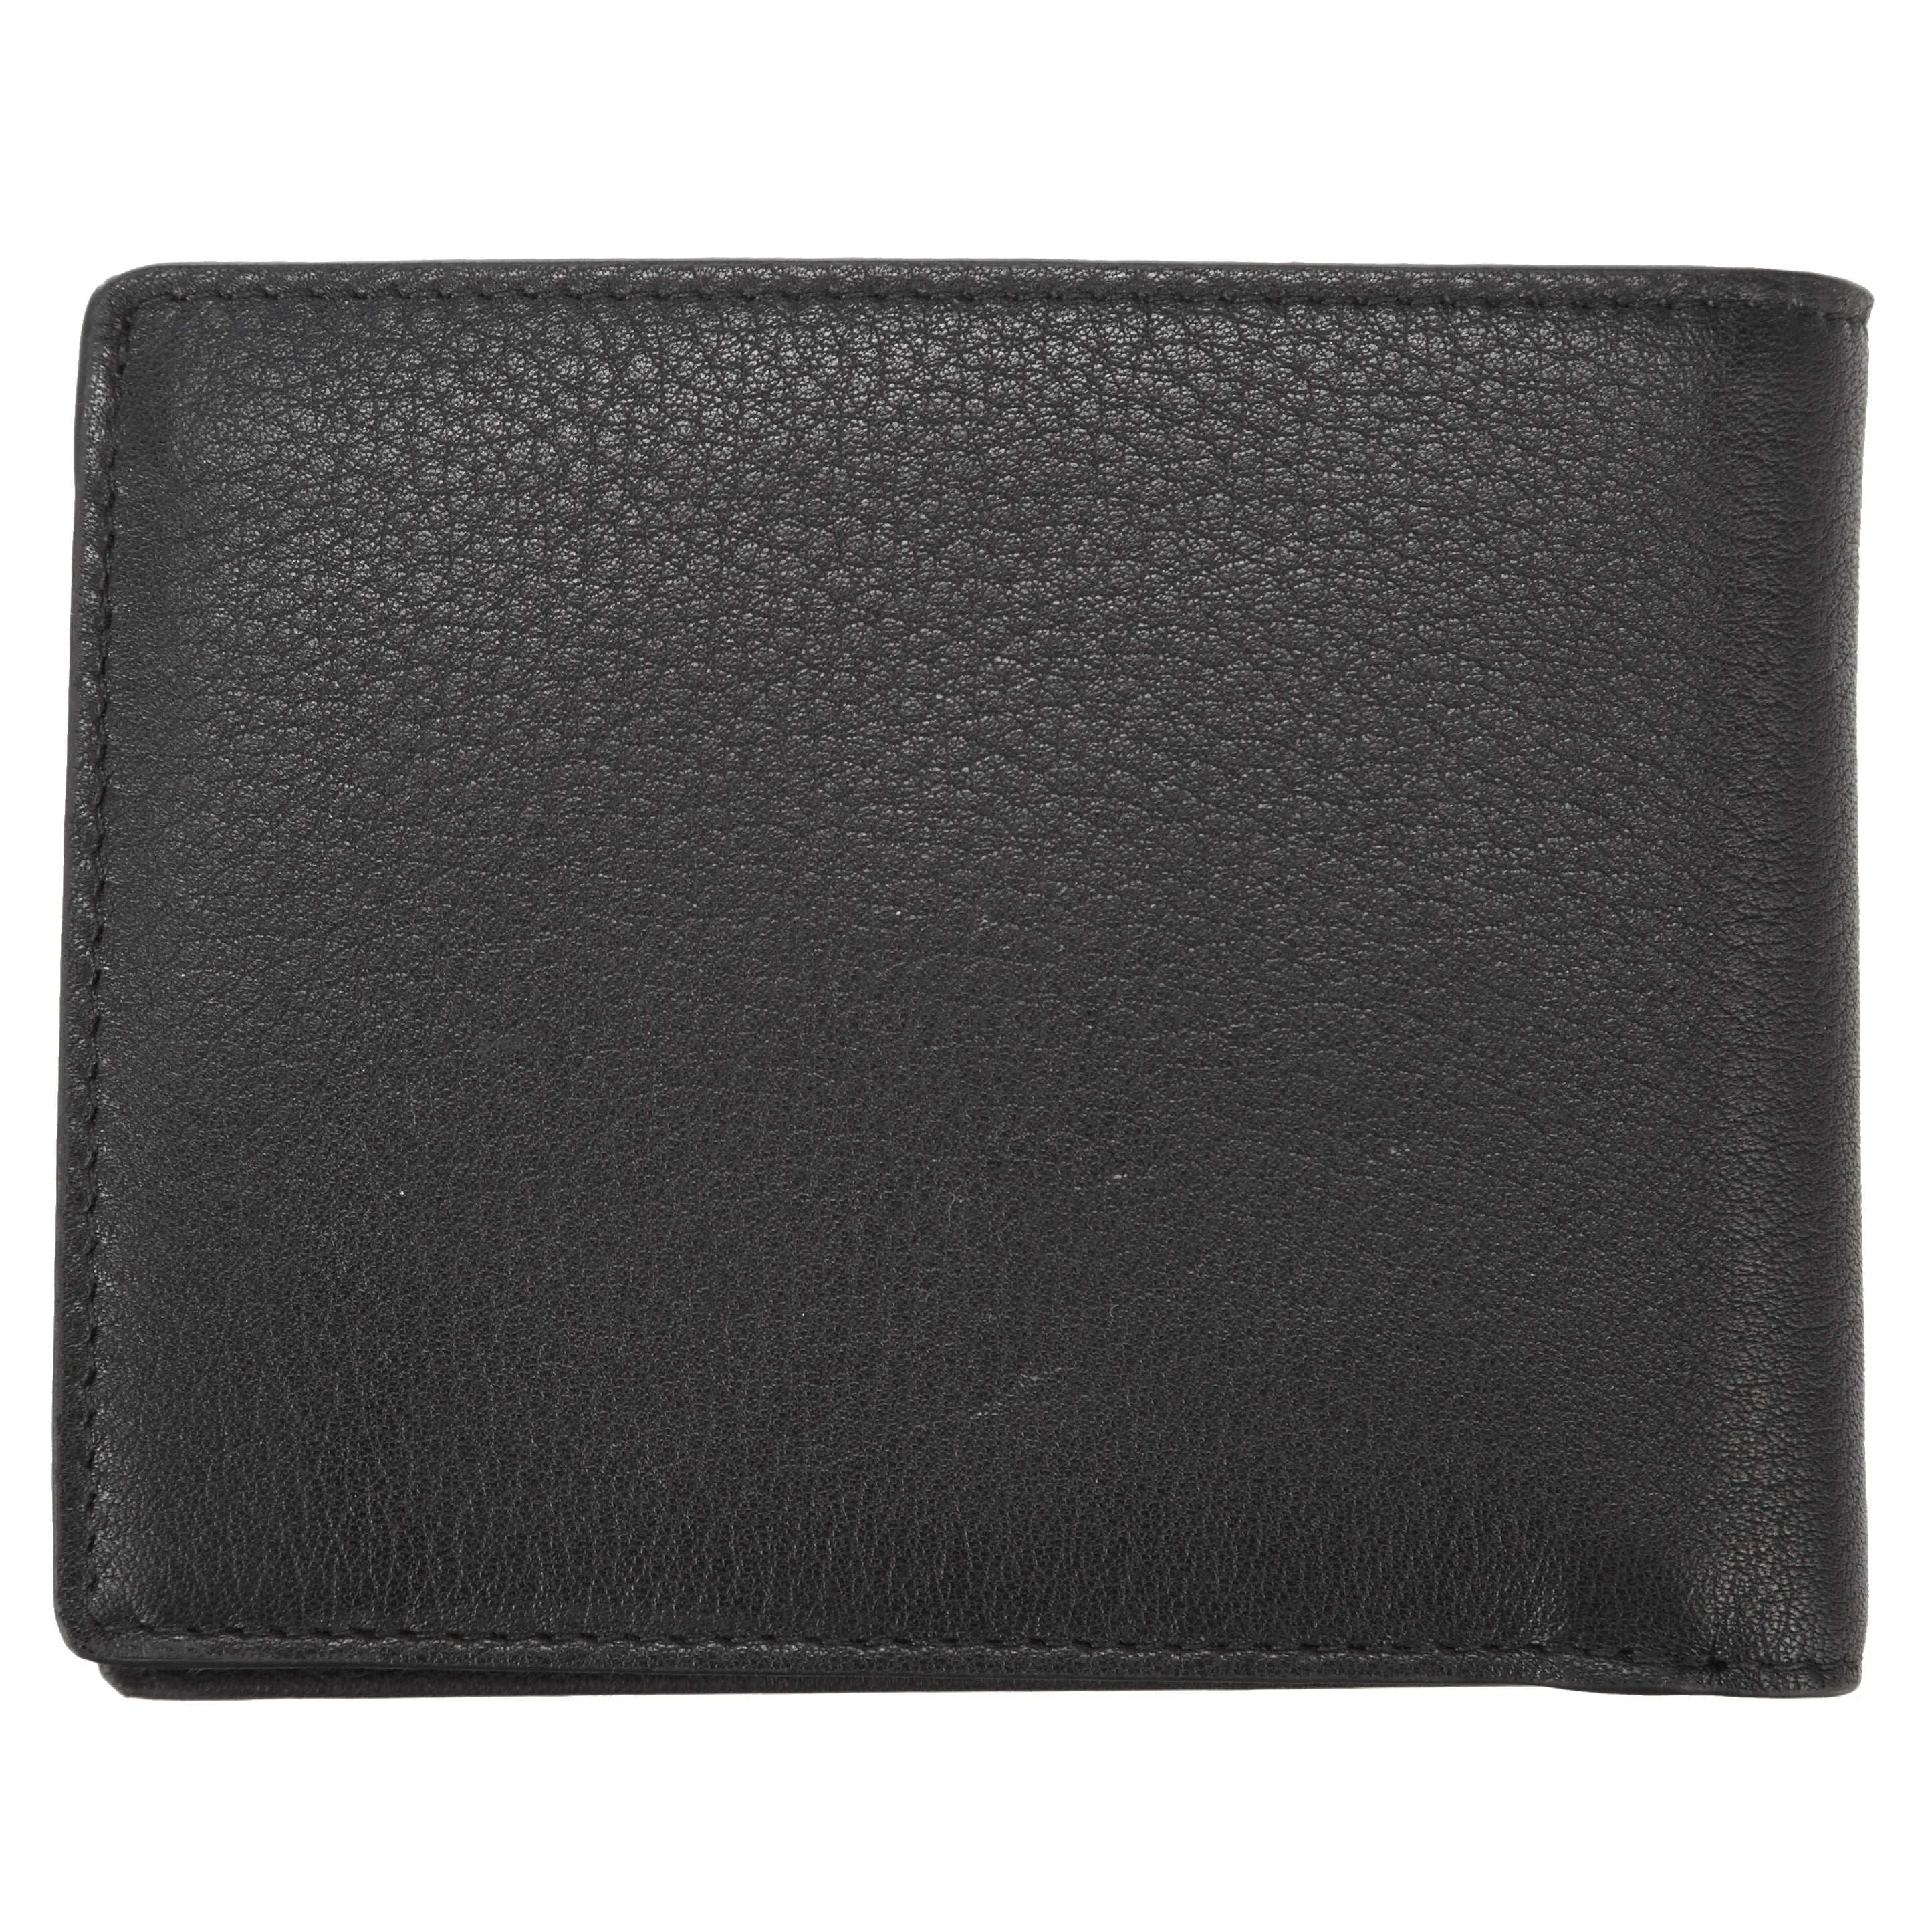 Porsche Design Accessories Business Wallet 5 RFID 11 cm - Black